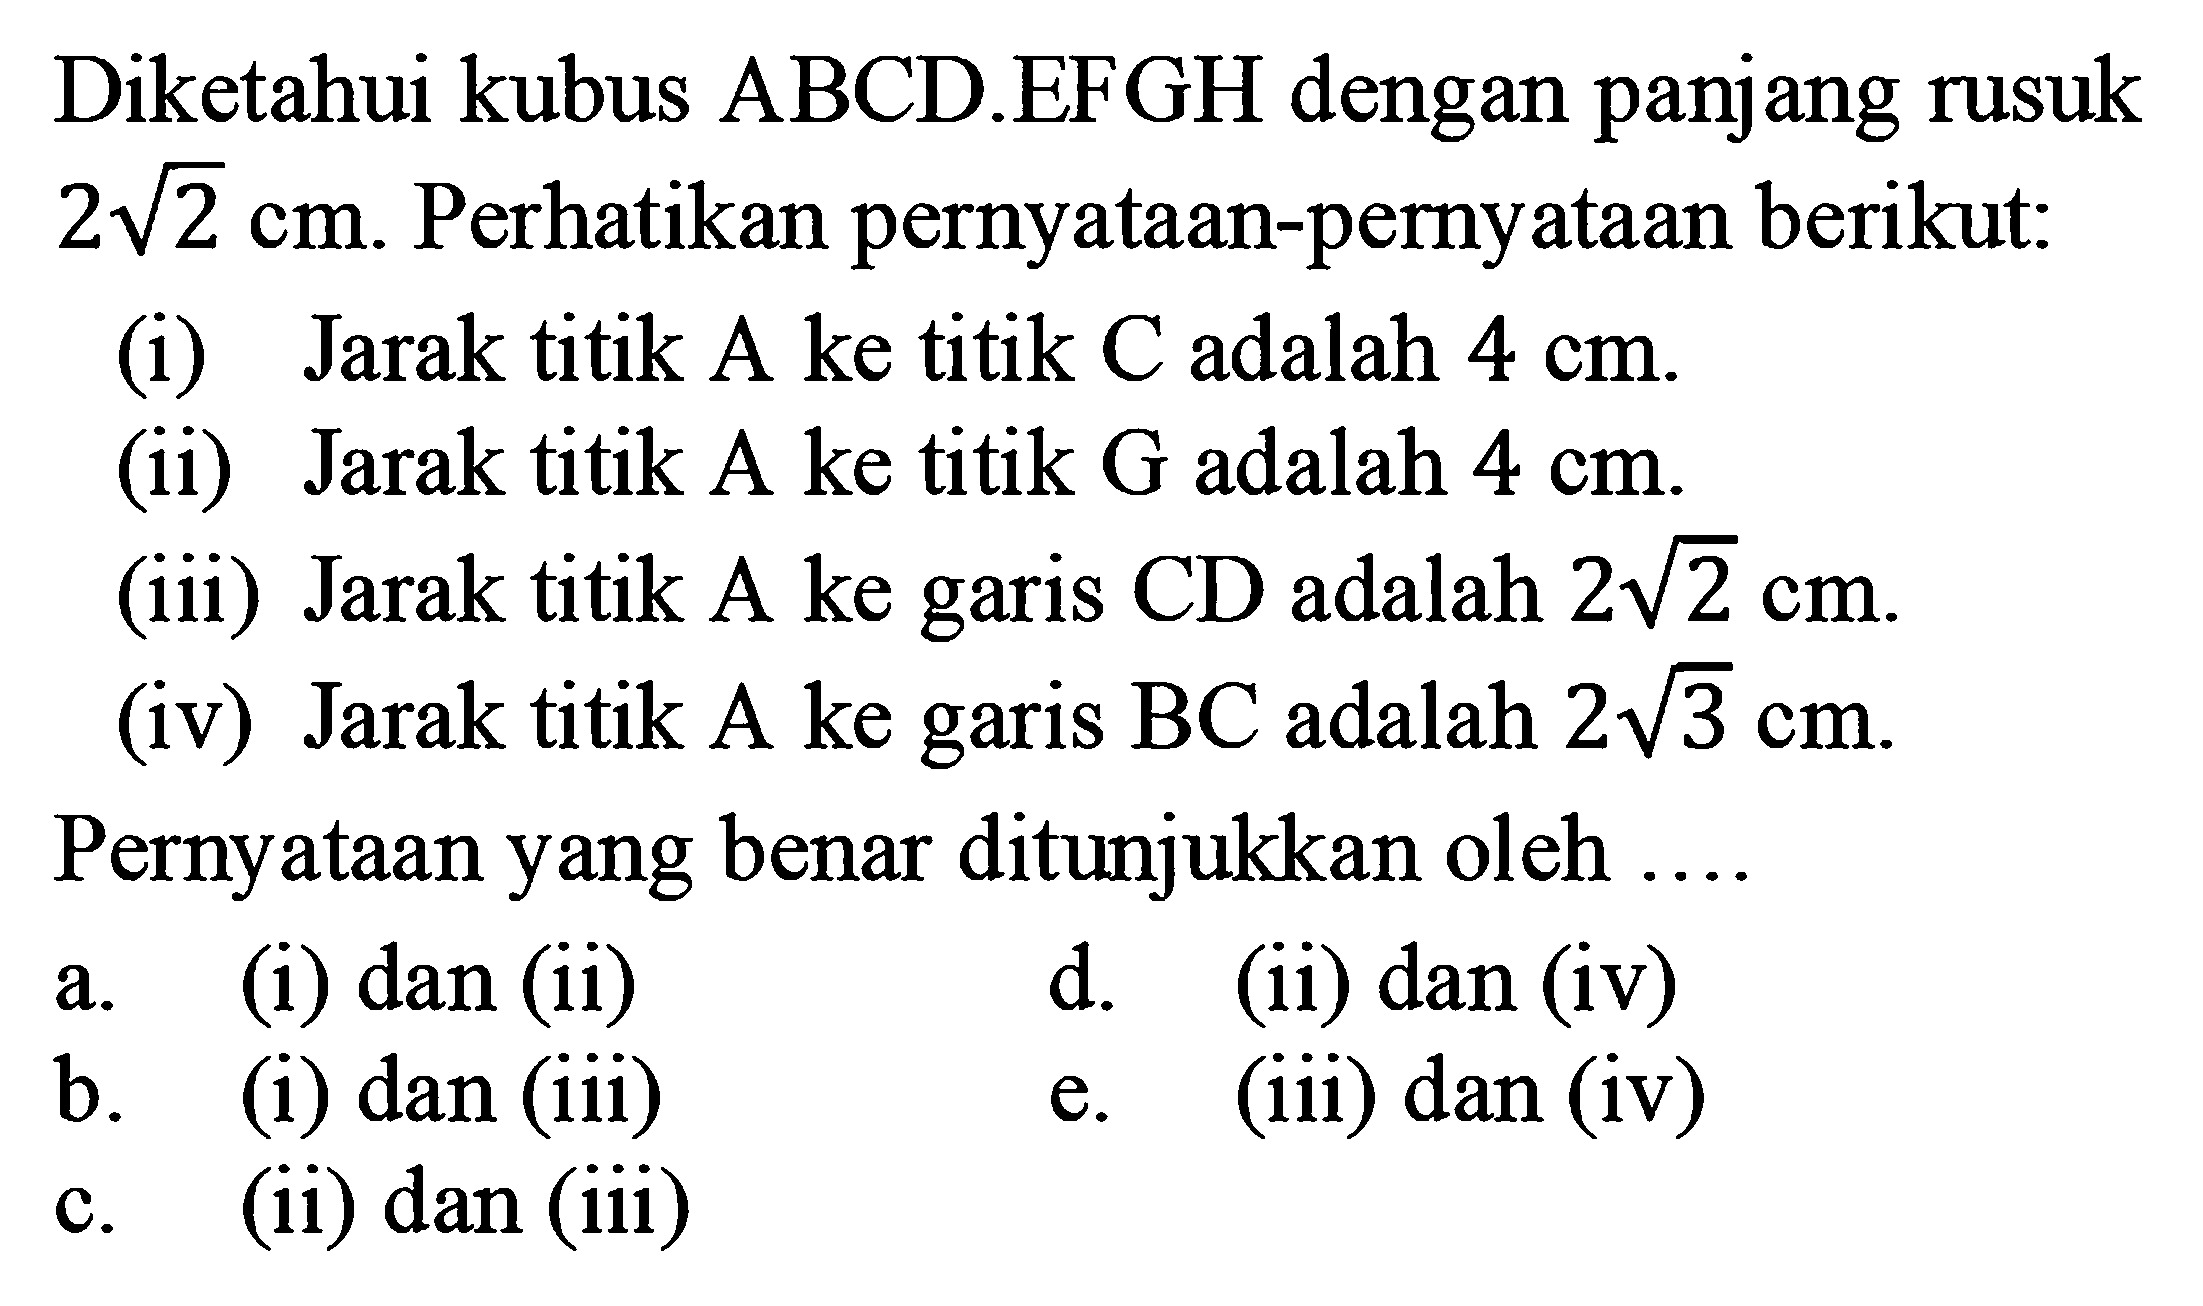 Diketahui kubus ABCD.EFGH dengan panjang rusuk 2 akar(2) cm. Perhatikan pernyataan-pemyataan berikut(i) Jarak titik A ke titik C adalah 4 cm. (ii) Jarak titik A ke titik G adalah 4 cm (iii) Jarak titik A ke garis CD adalah 2 akar(2) cm (iv) Jarak titik A ke garis BC adalah 2 akar(3) cm. Pernyataan yang benar ditunjukkan oleh .... a. (i) dan (ii) d. (ii) dan (iv) b. (1) dan (iii) e. (iii) dan (iv) c. (ii) dan iii)